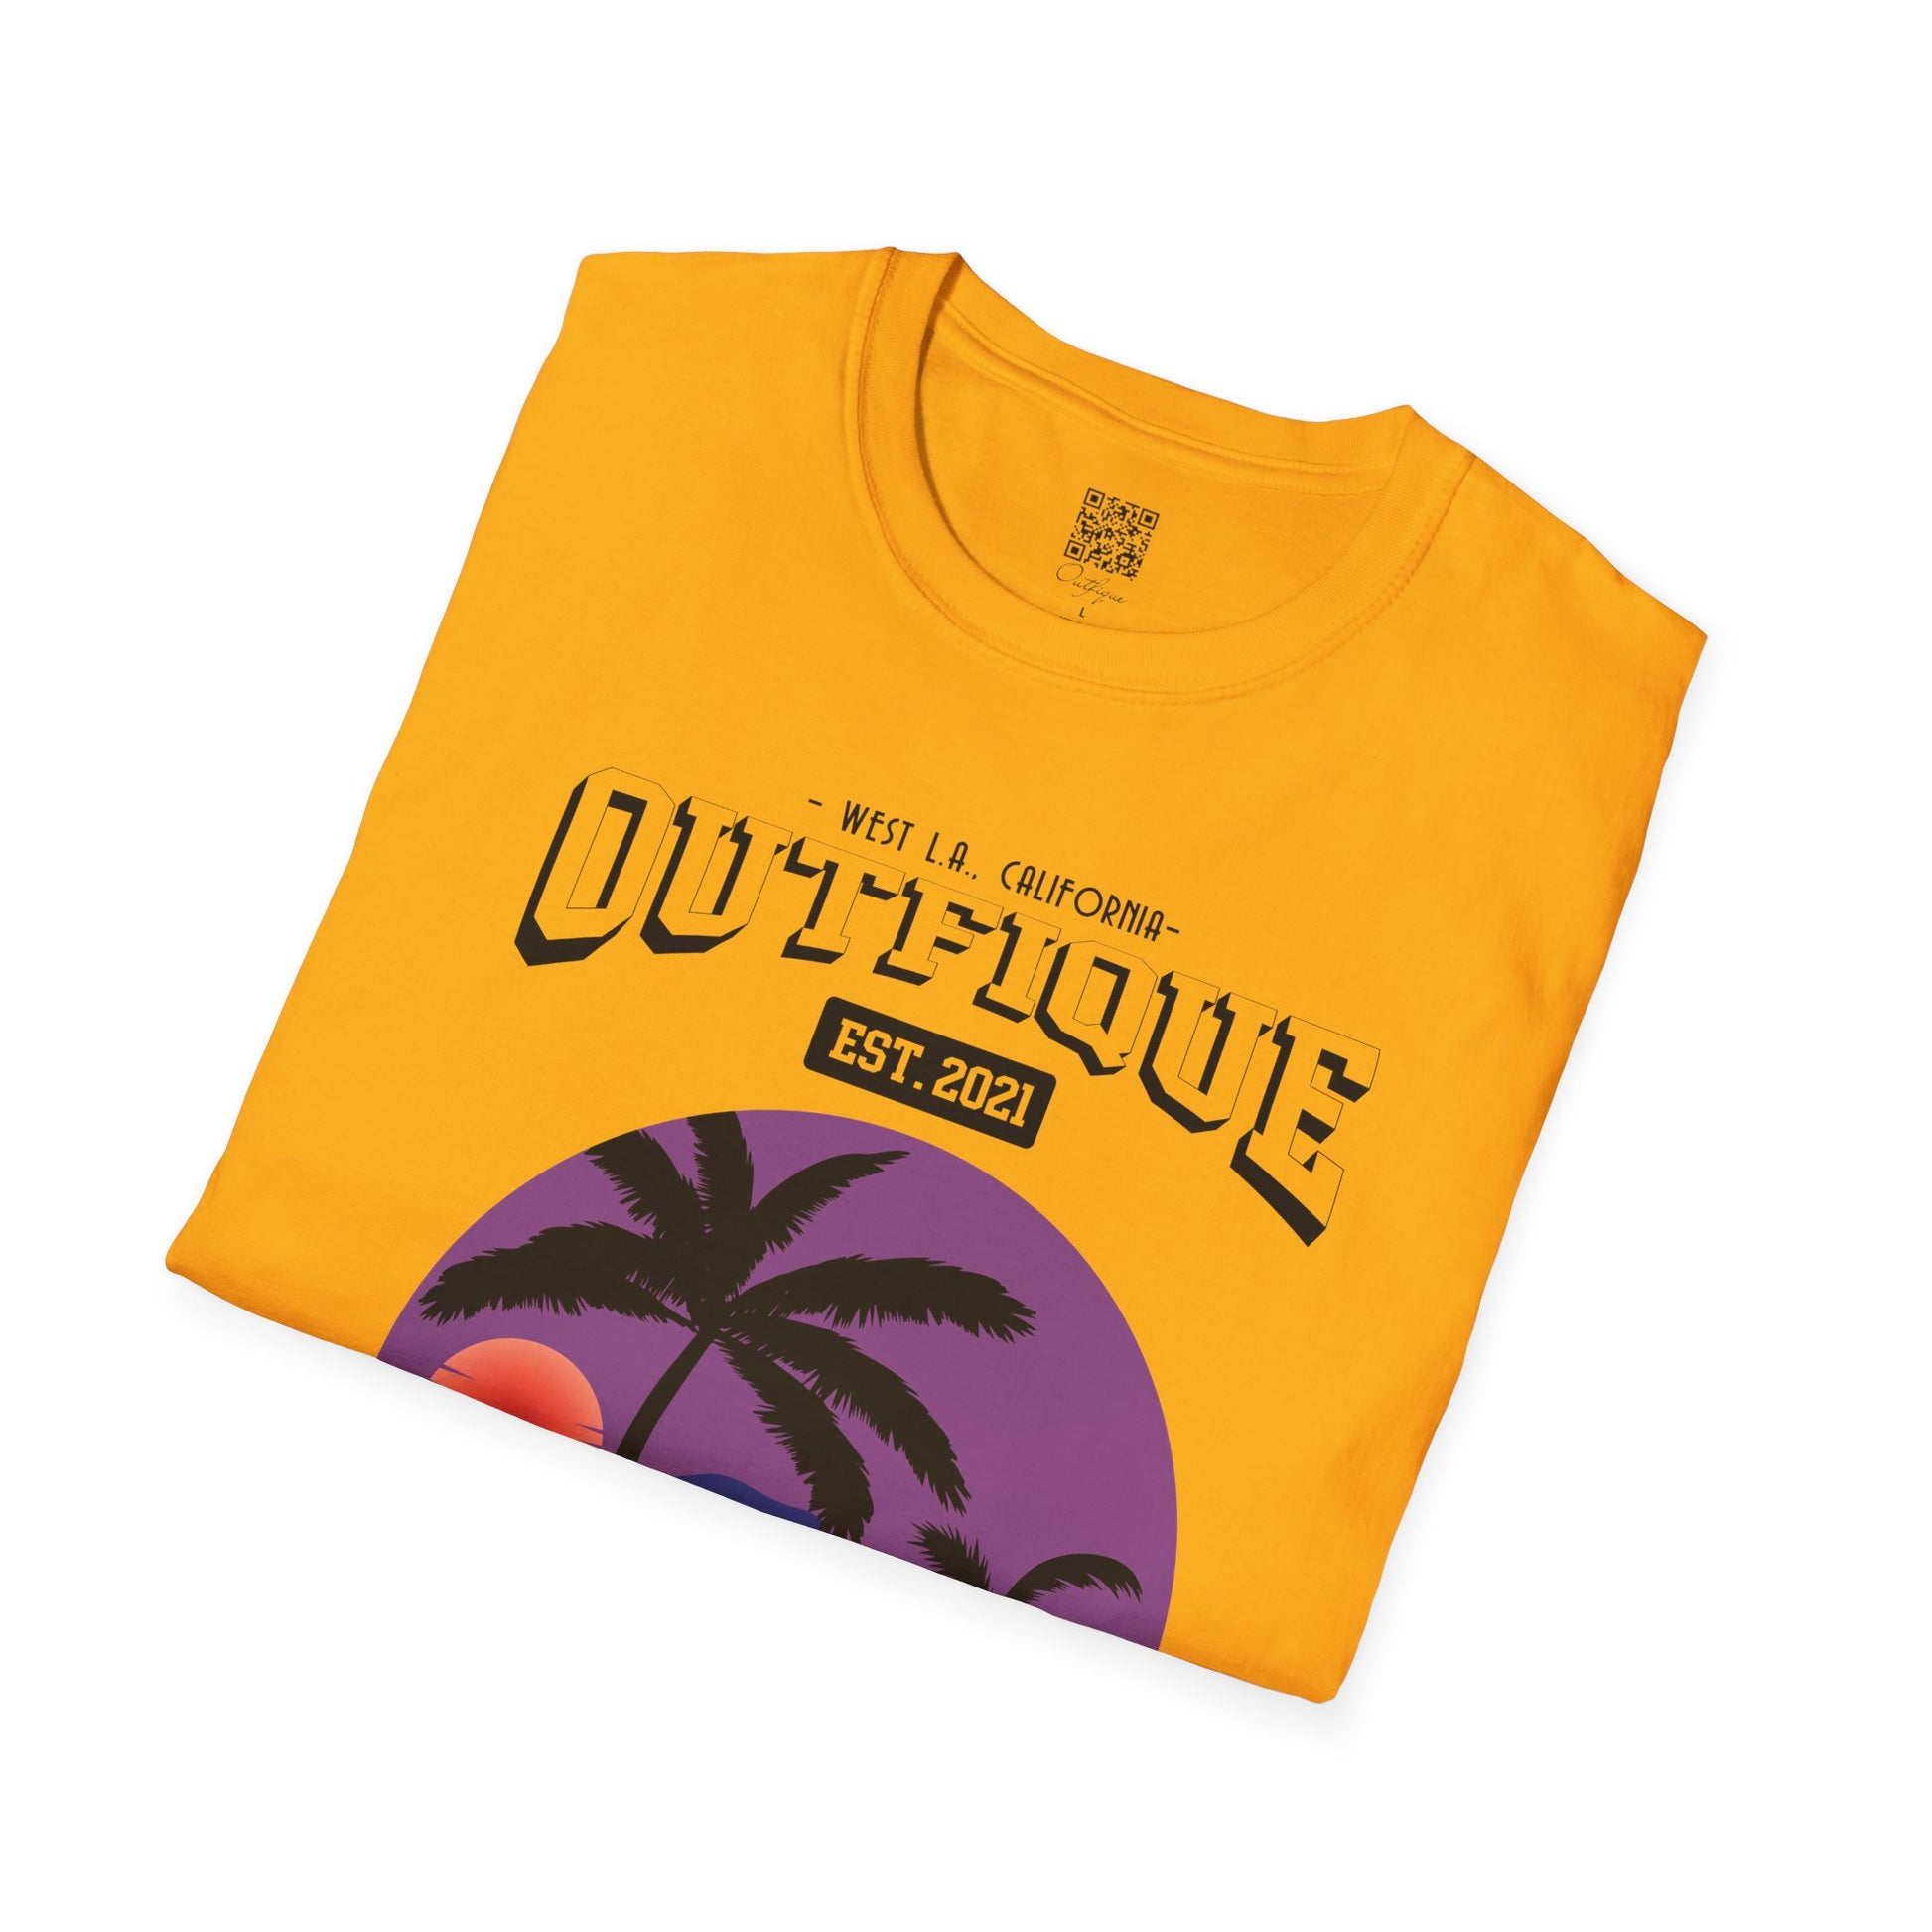 WEST L.A. T-Shirt | Outfique | T-Shirt | Crew neck